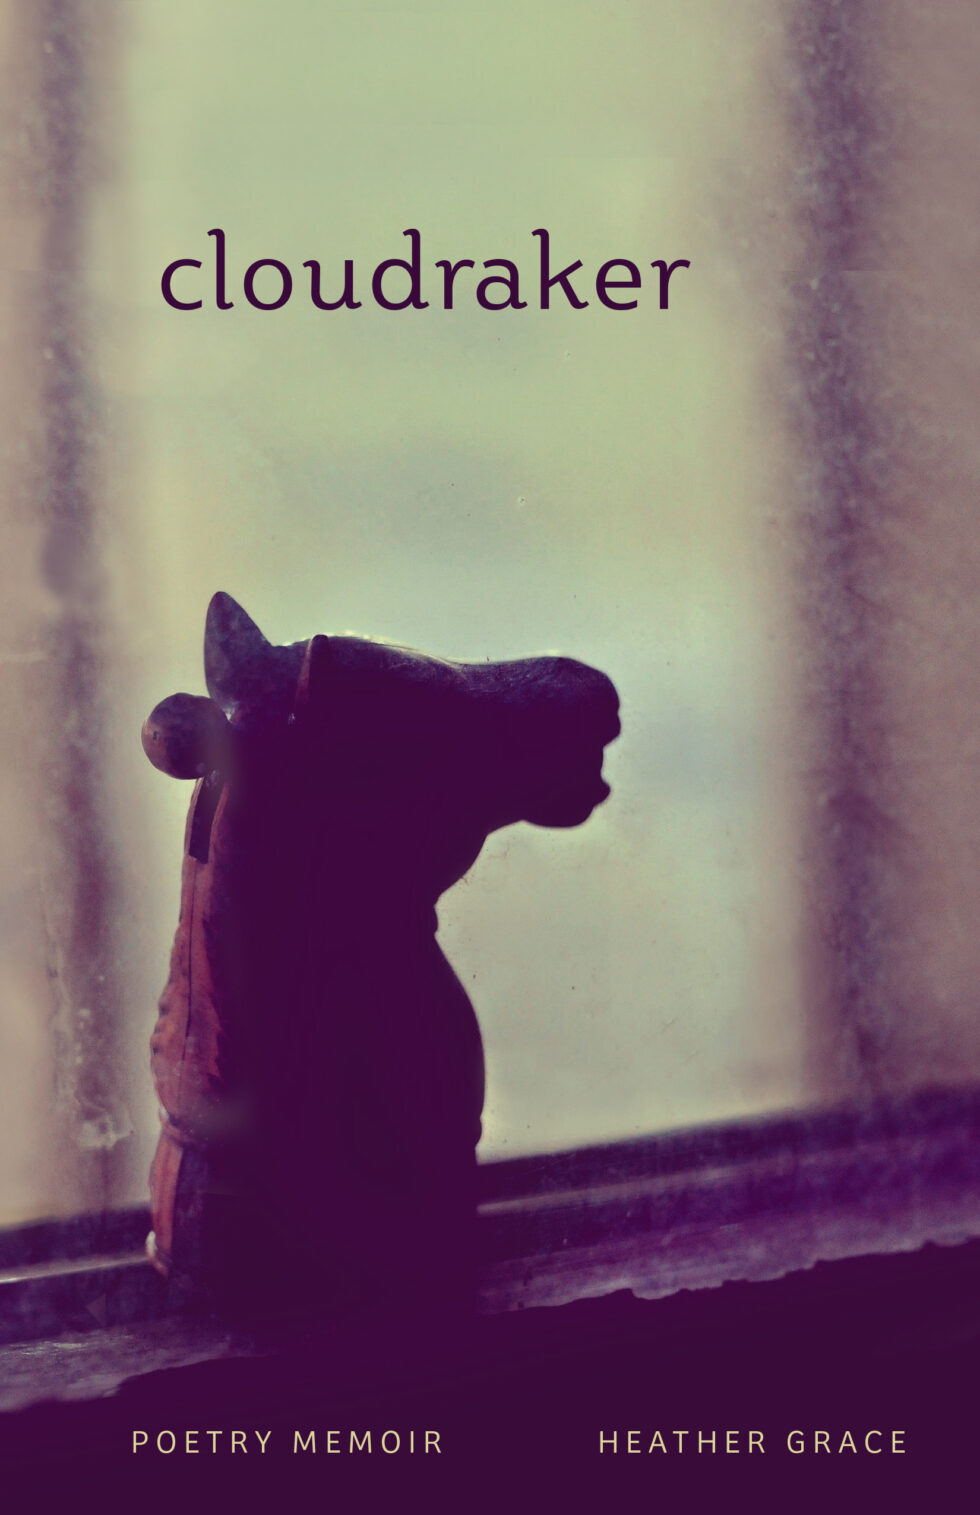 Cloudraker